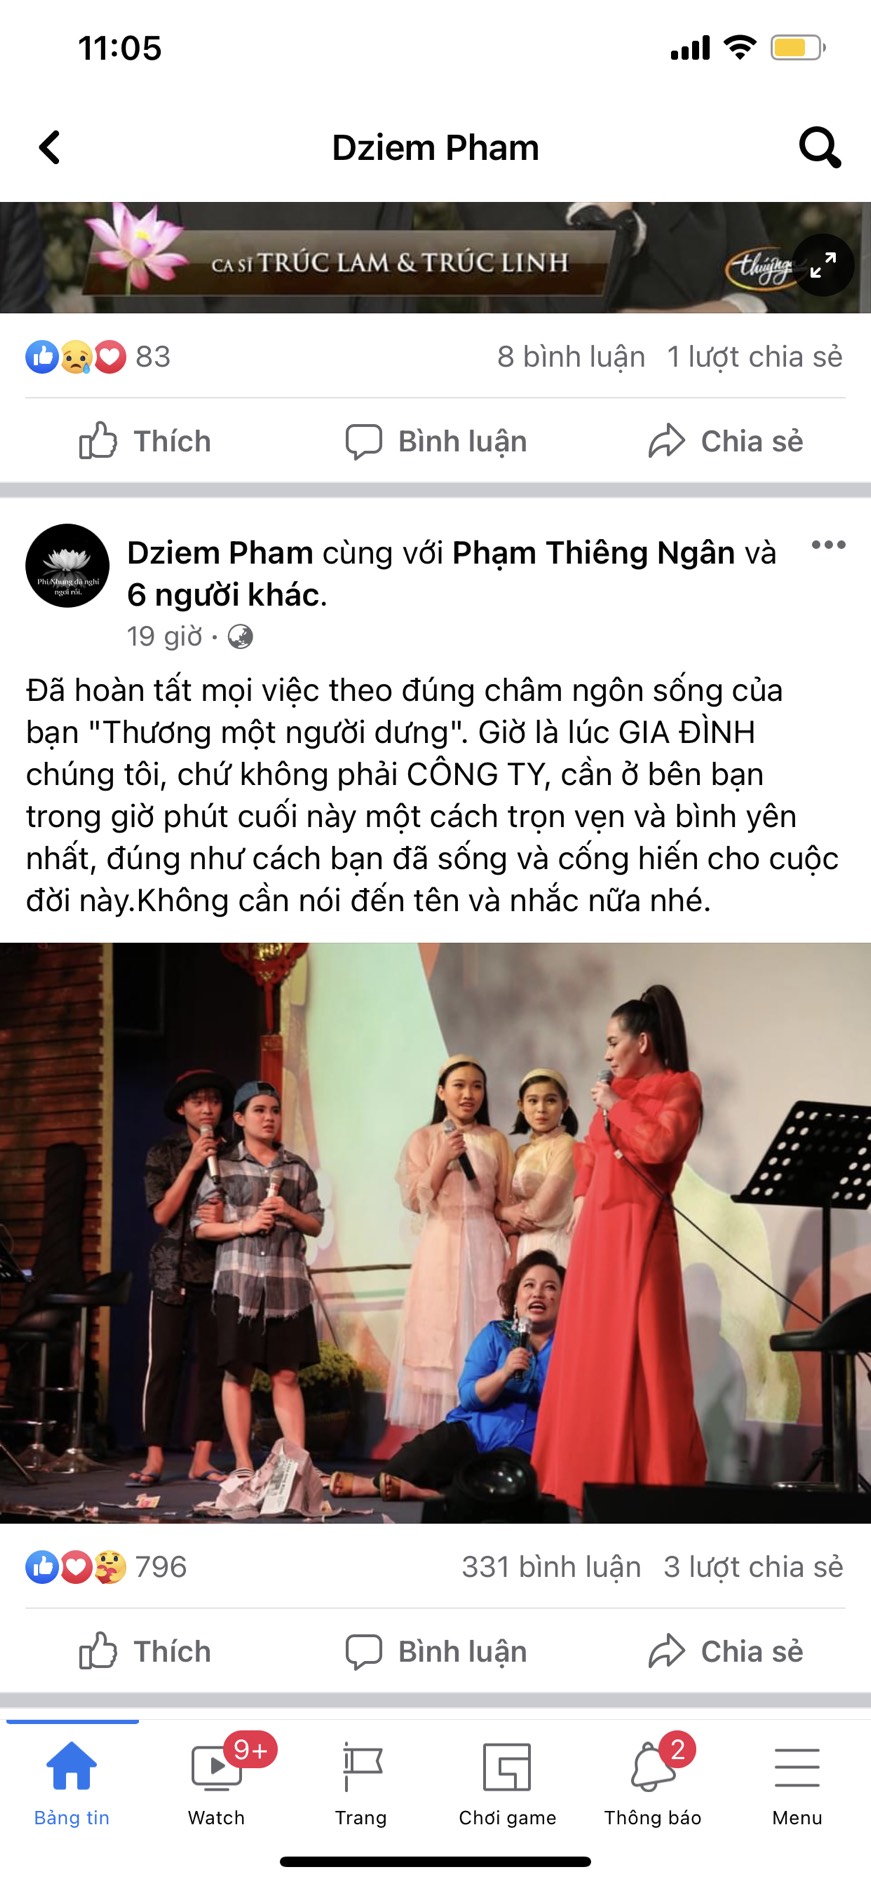 Bài đăng của Diễm Phạm trước khi tang lễ của Phi Nhung được diễn ra